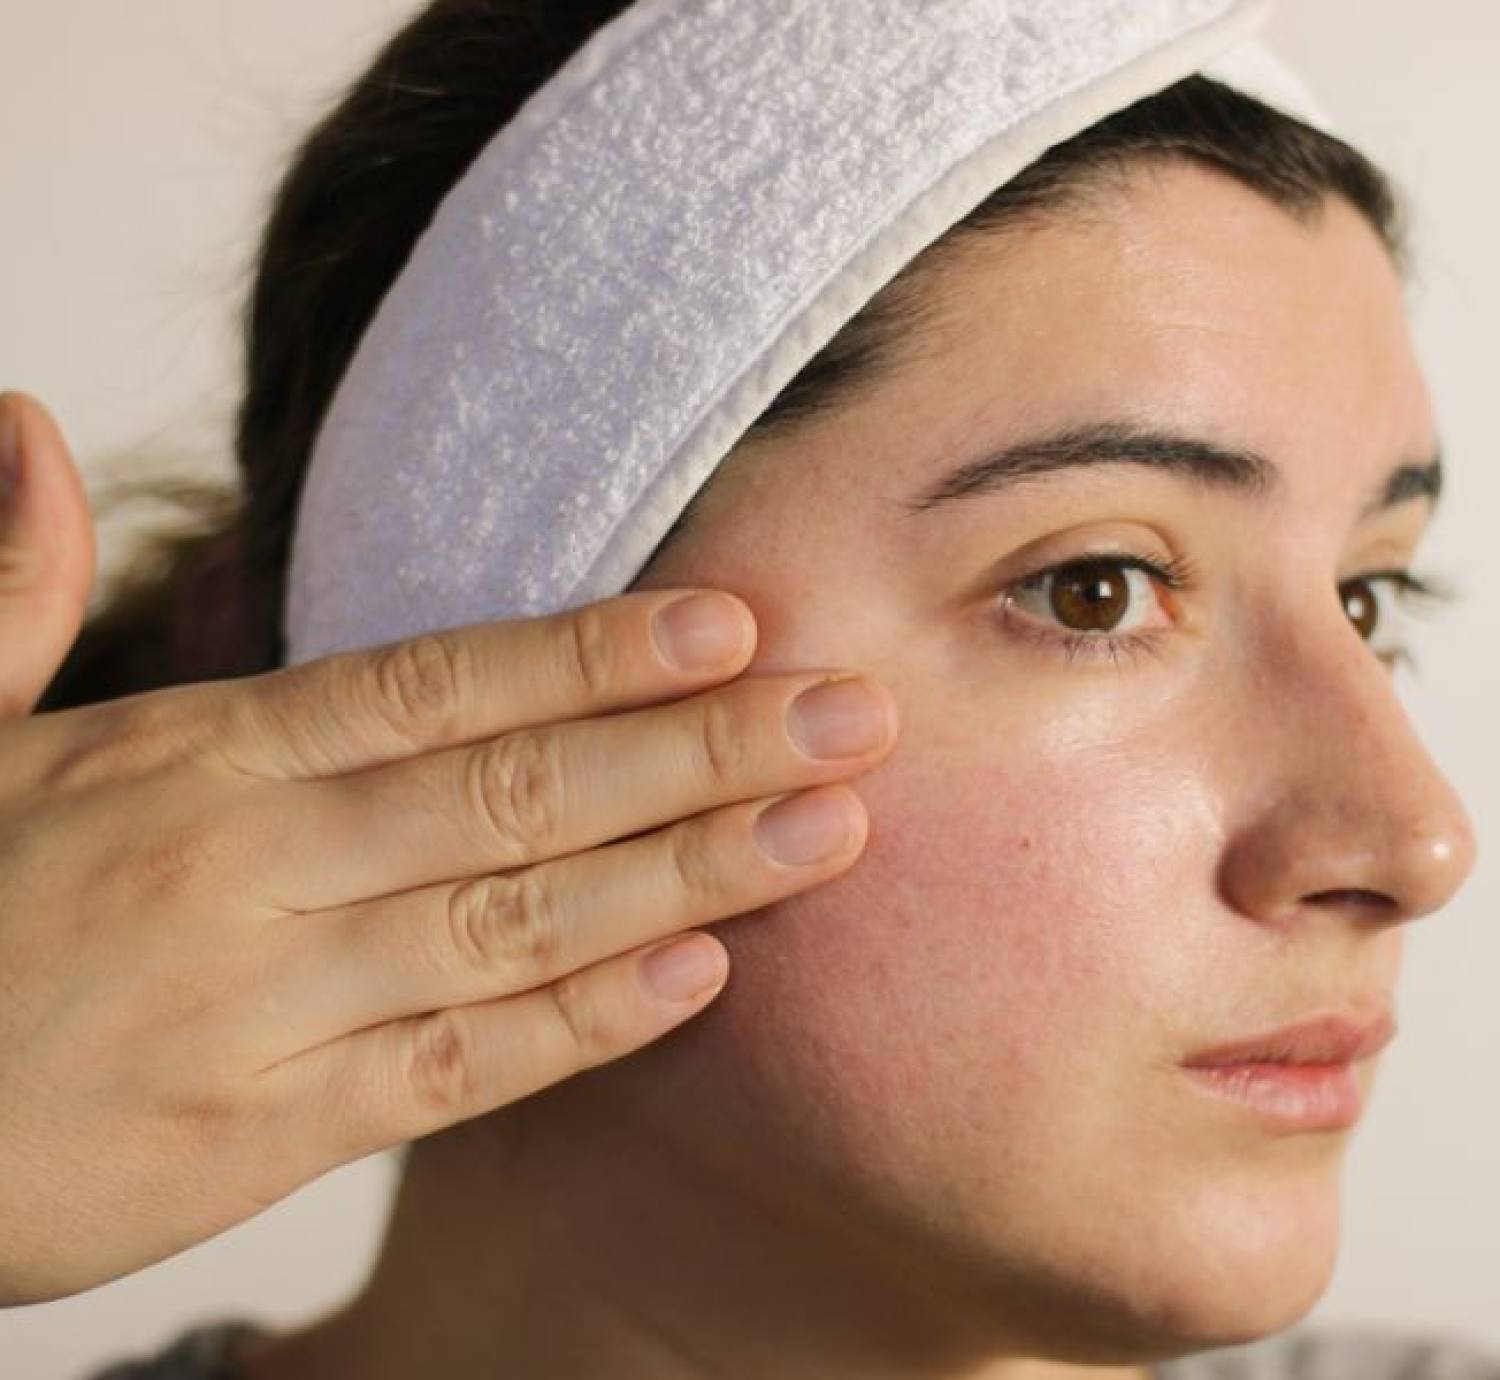 Peel da bị đỏ: Tác dụng phụ sau khi peel và cách phục hồi da